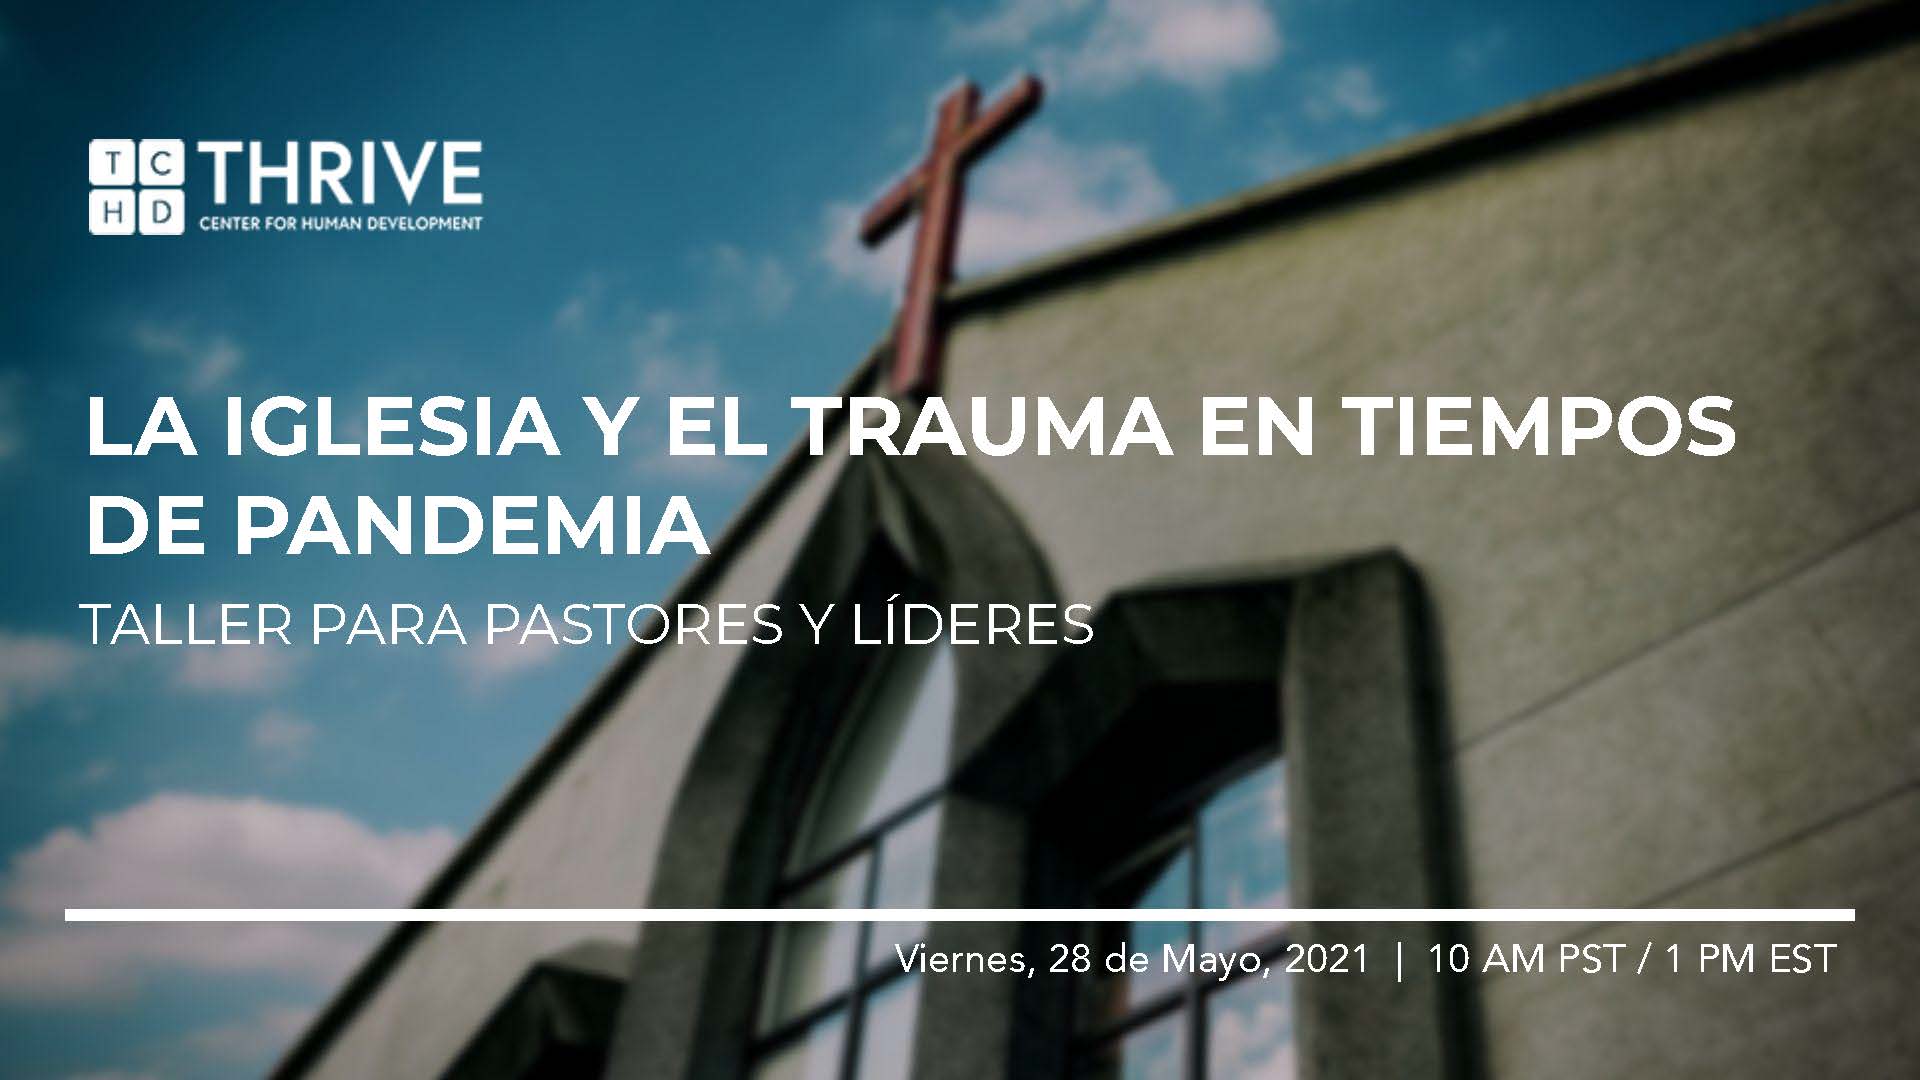 "La Iglesia y el Trauma en Tiempos de Pandemia" Cover Image